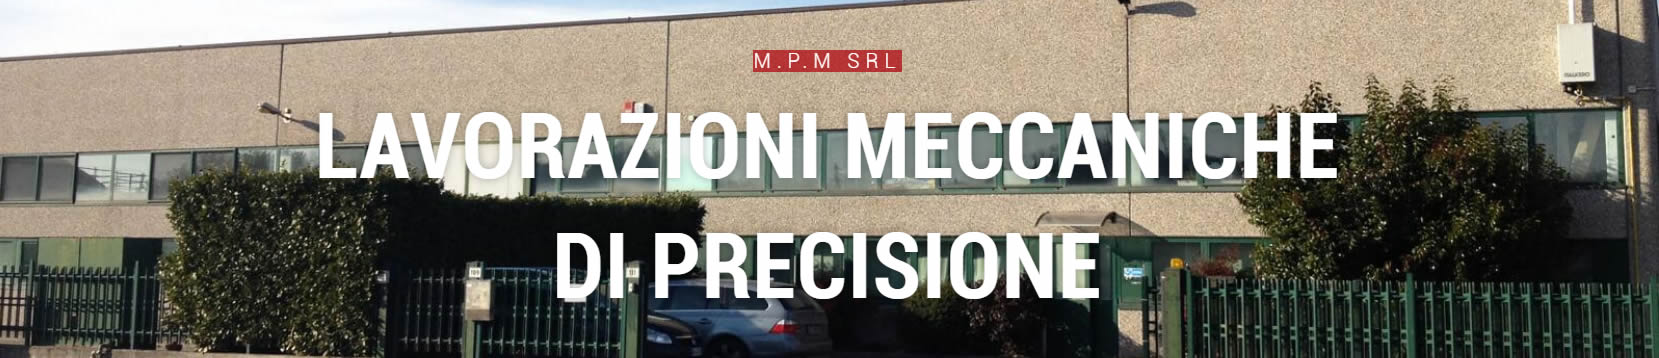 Officina meccanica di precisione Ferno MPM srl